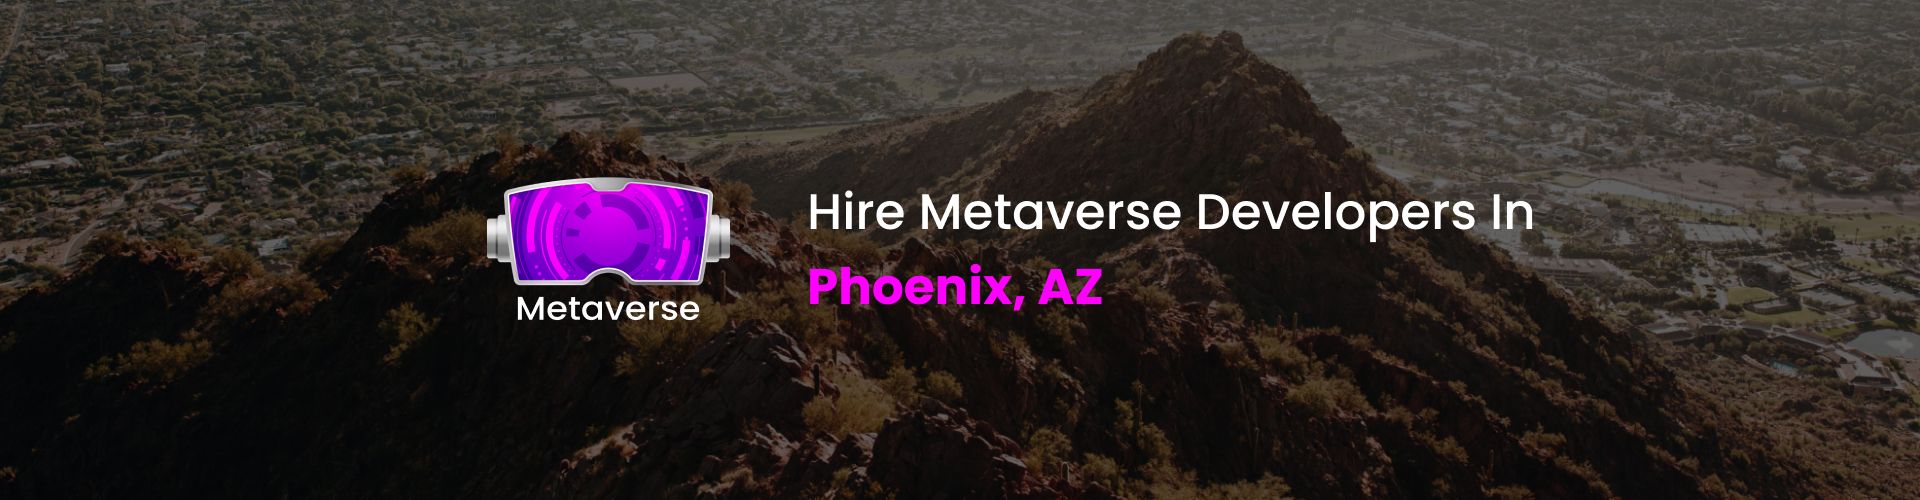 hire metaverse developers in phoenix